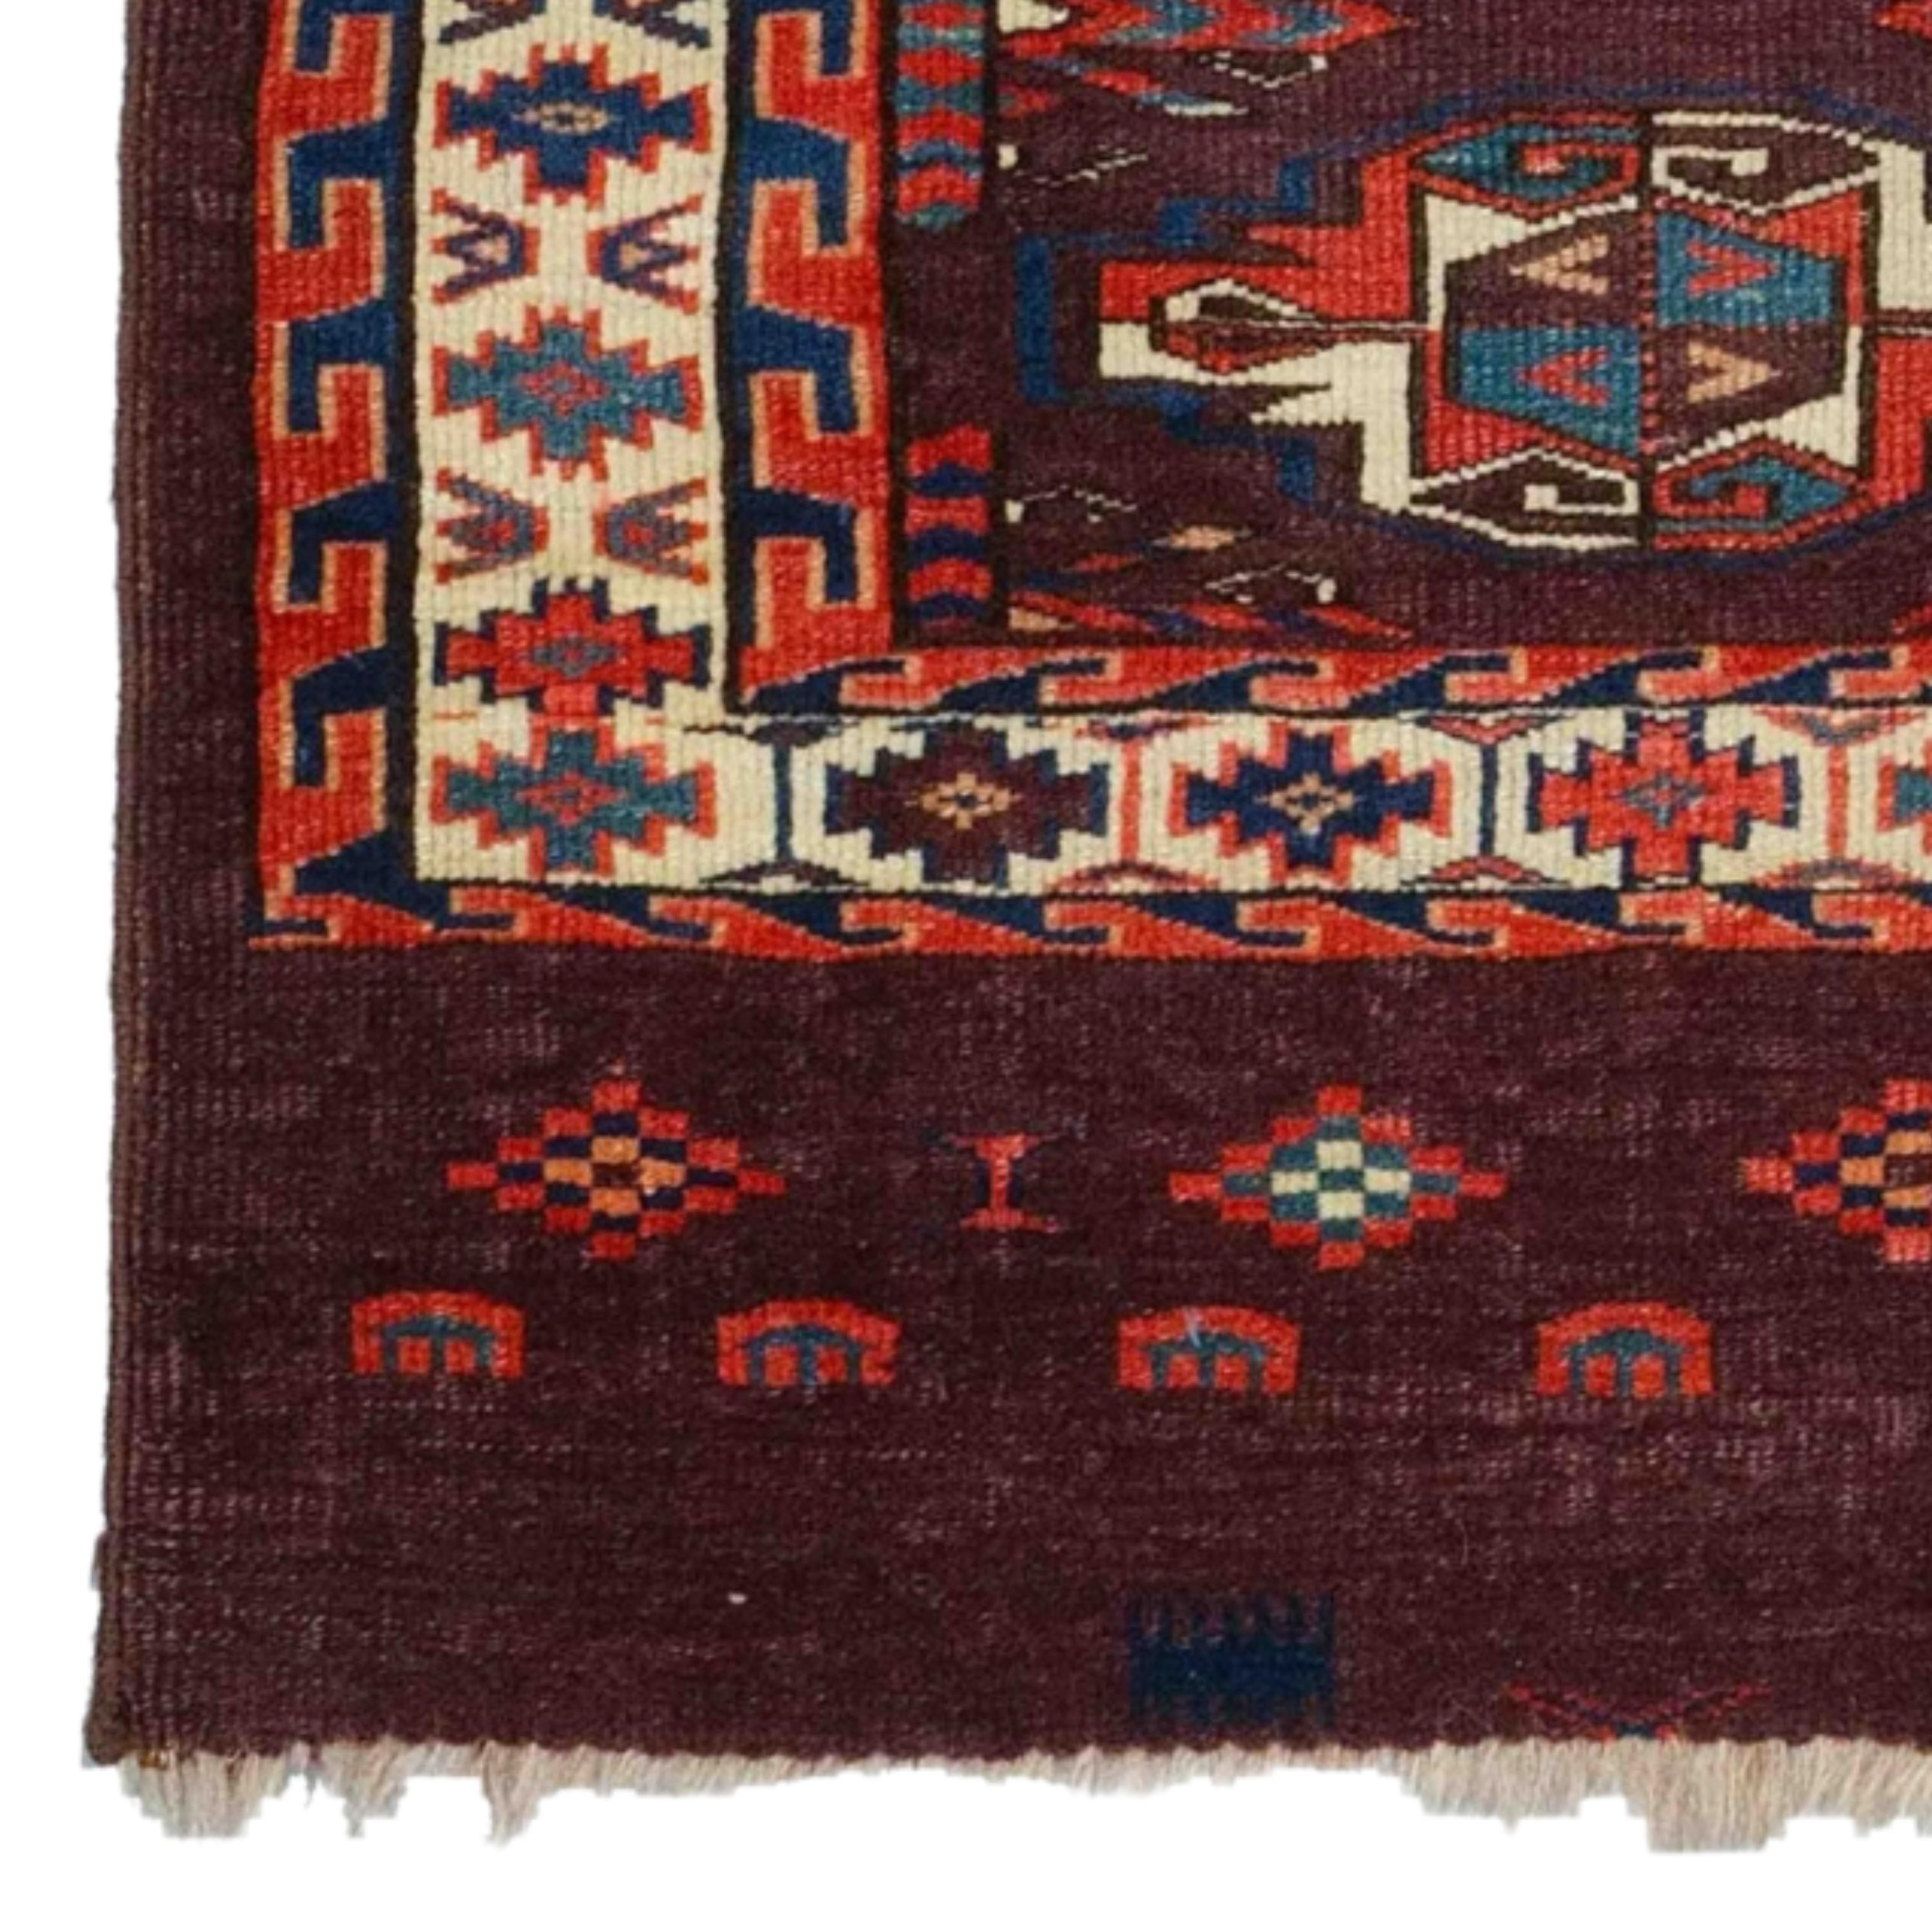 Cet exquis tapis chuval turkmène du XIXe siècle est une œuvre d'art, soigneusement tissée et qui a résisté à l'épreuve du temps. La riche palette de couleurs et les motifs complexes révèlent l'impressionnante beauté de ce tapis, dont chaque pièce a